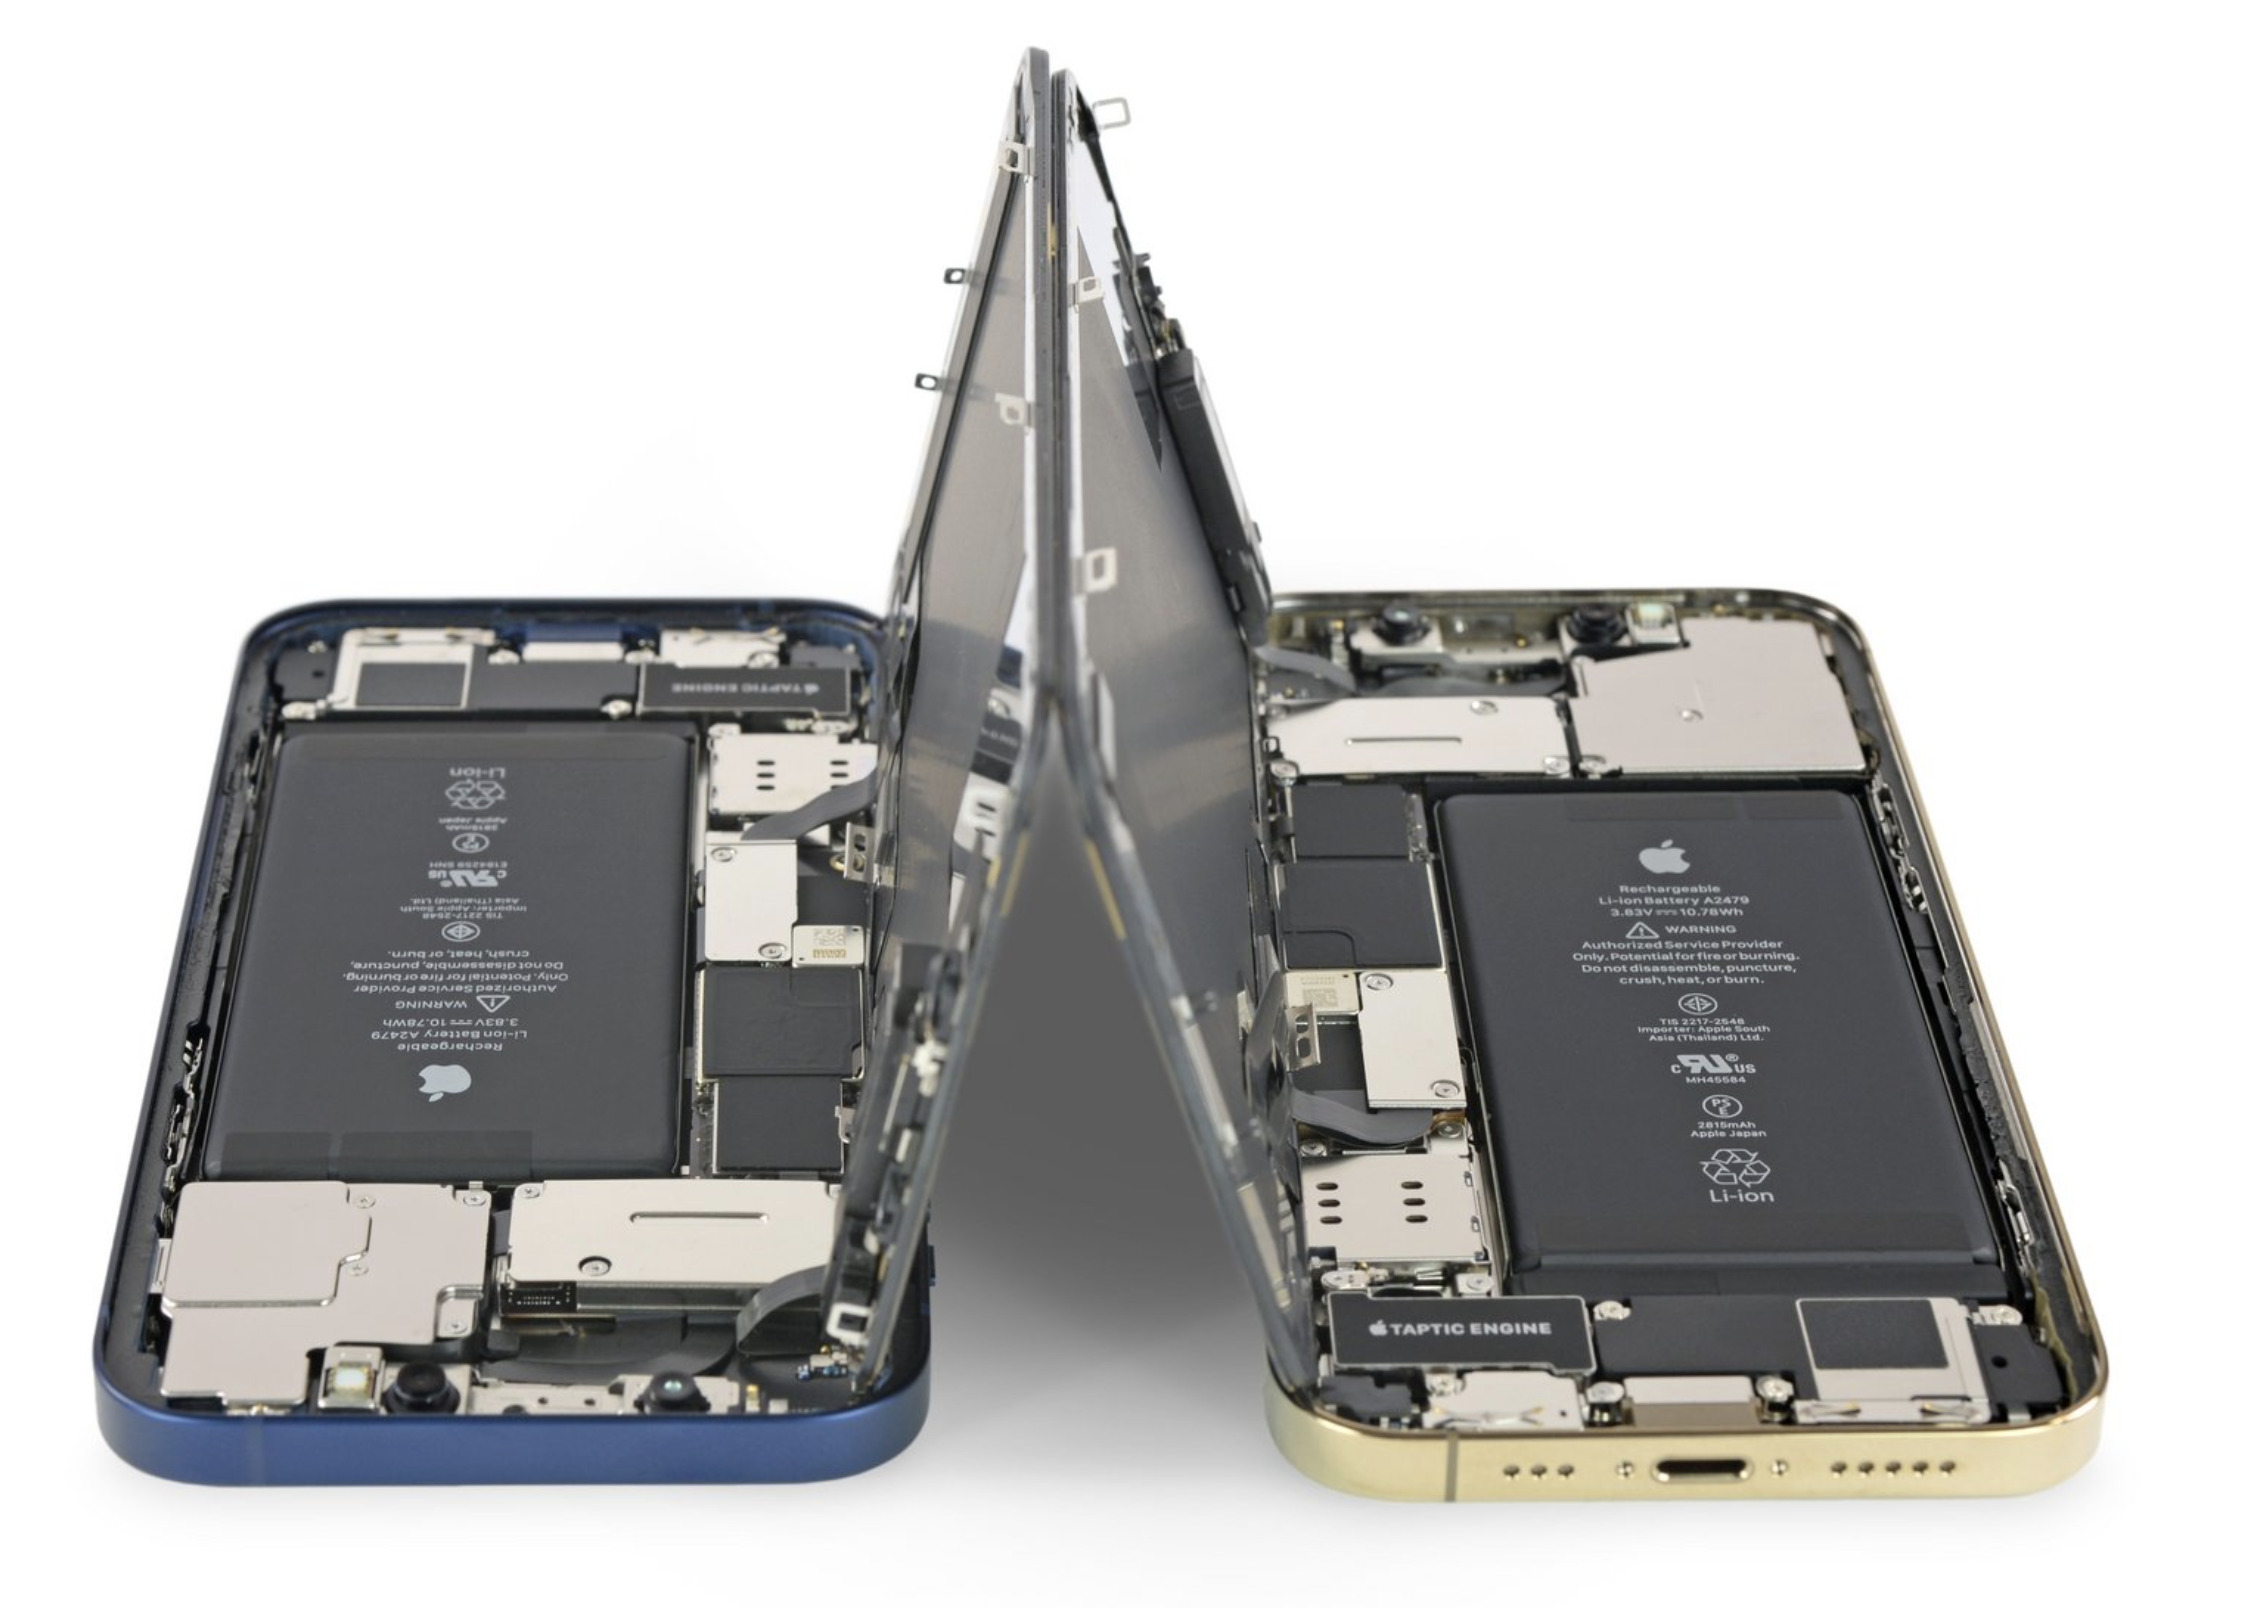 Test iPhone 12 Pro Max : le smartphone ultime d'Apple - Les Numériques